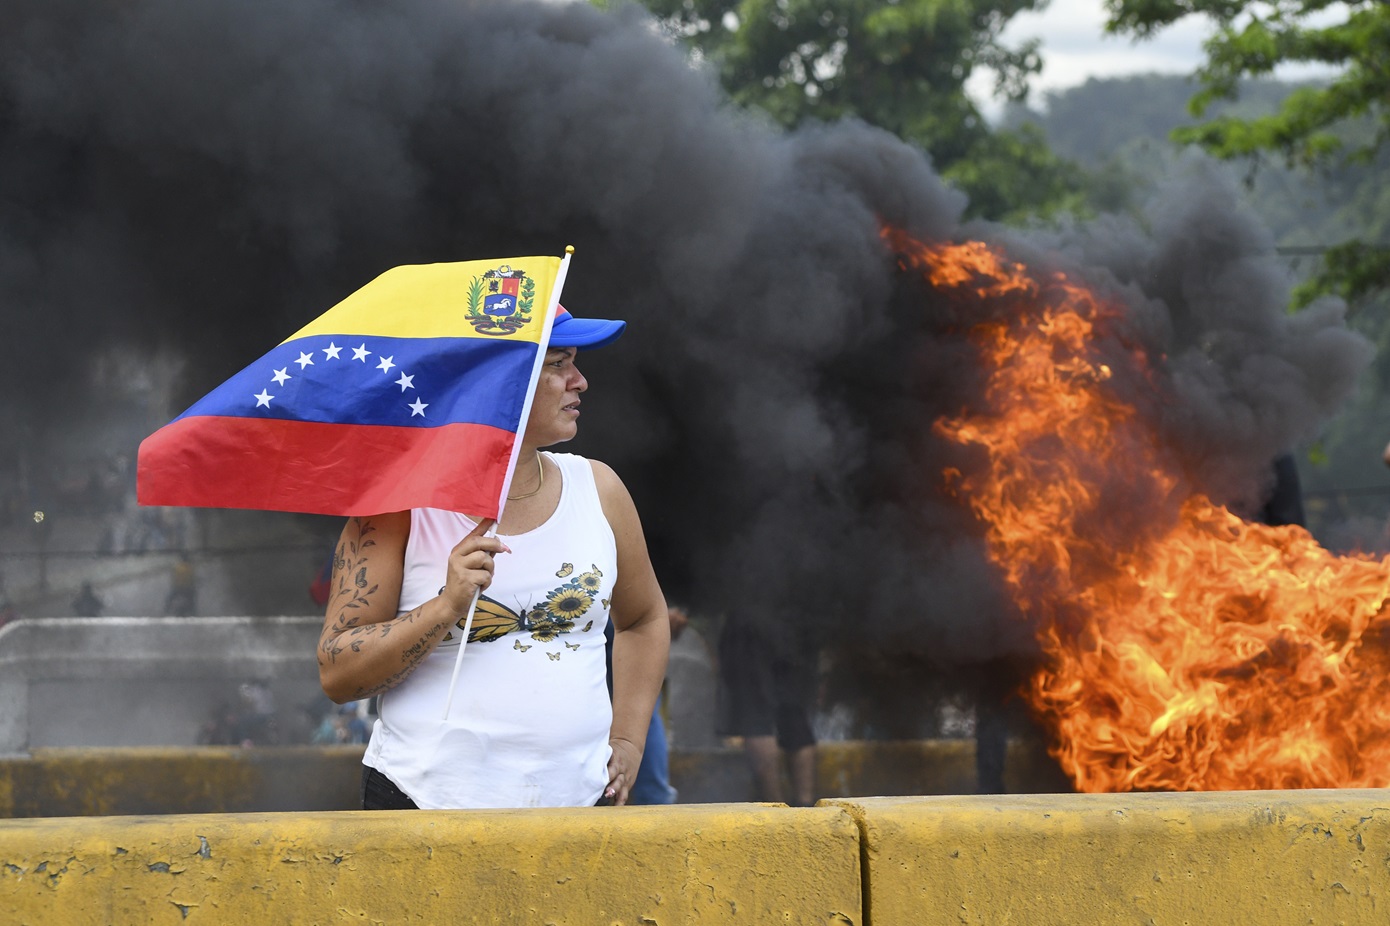 Δακρυγόνα σε διαδήλωση στη Βενεζουέλα κατά του Μαδούρου – Η αντιπολίτευση αναφέρει πως έχει αποδείξεις για τη νίκη της